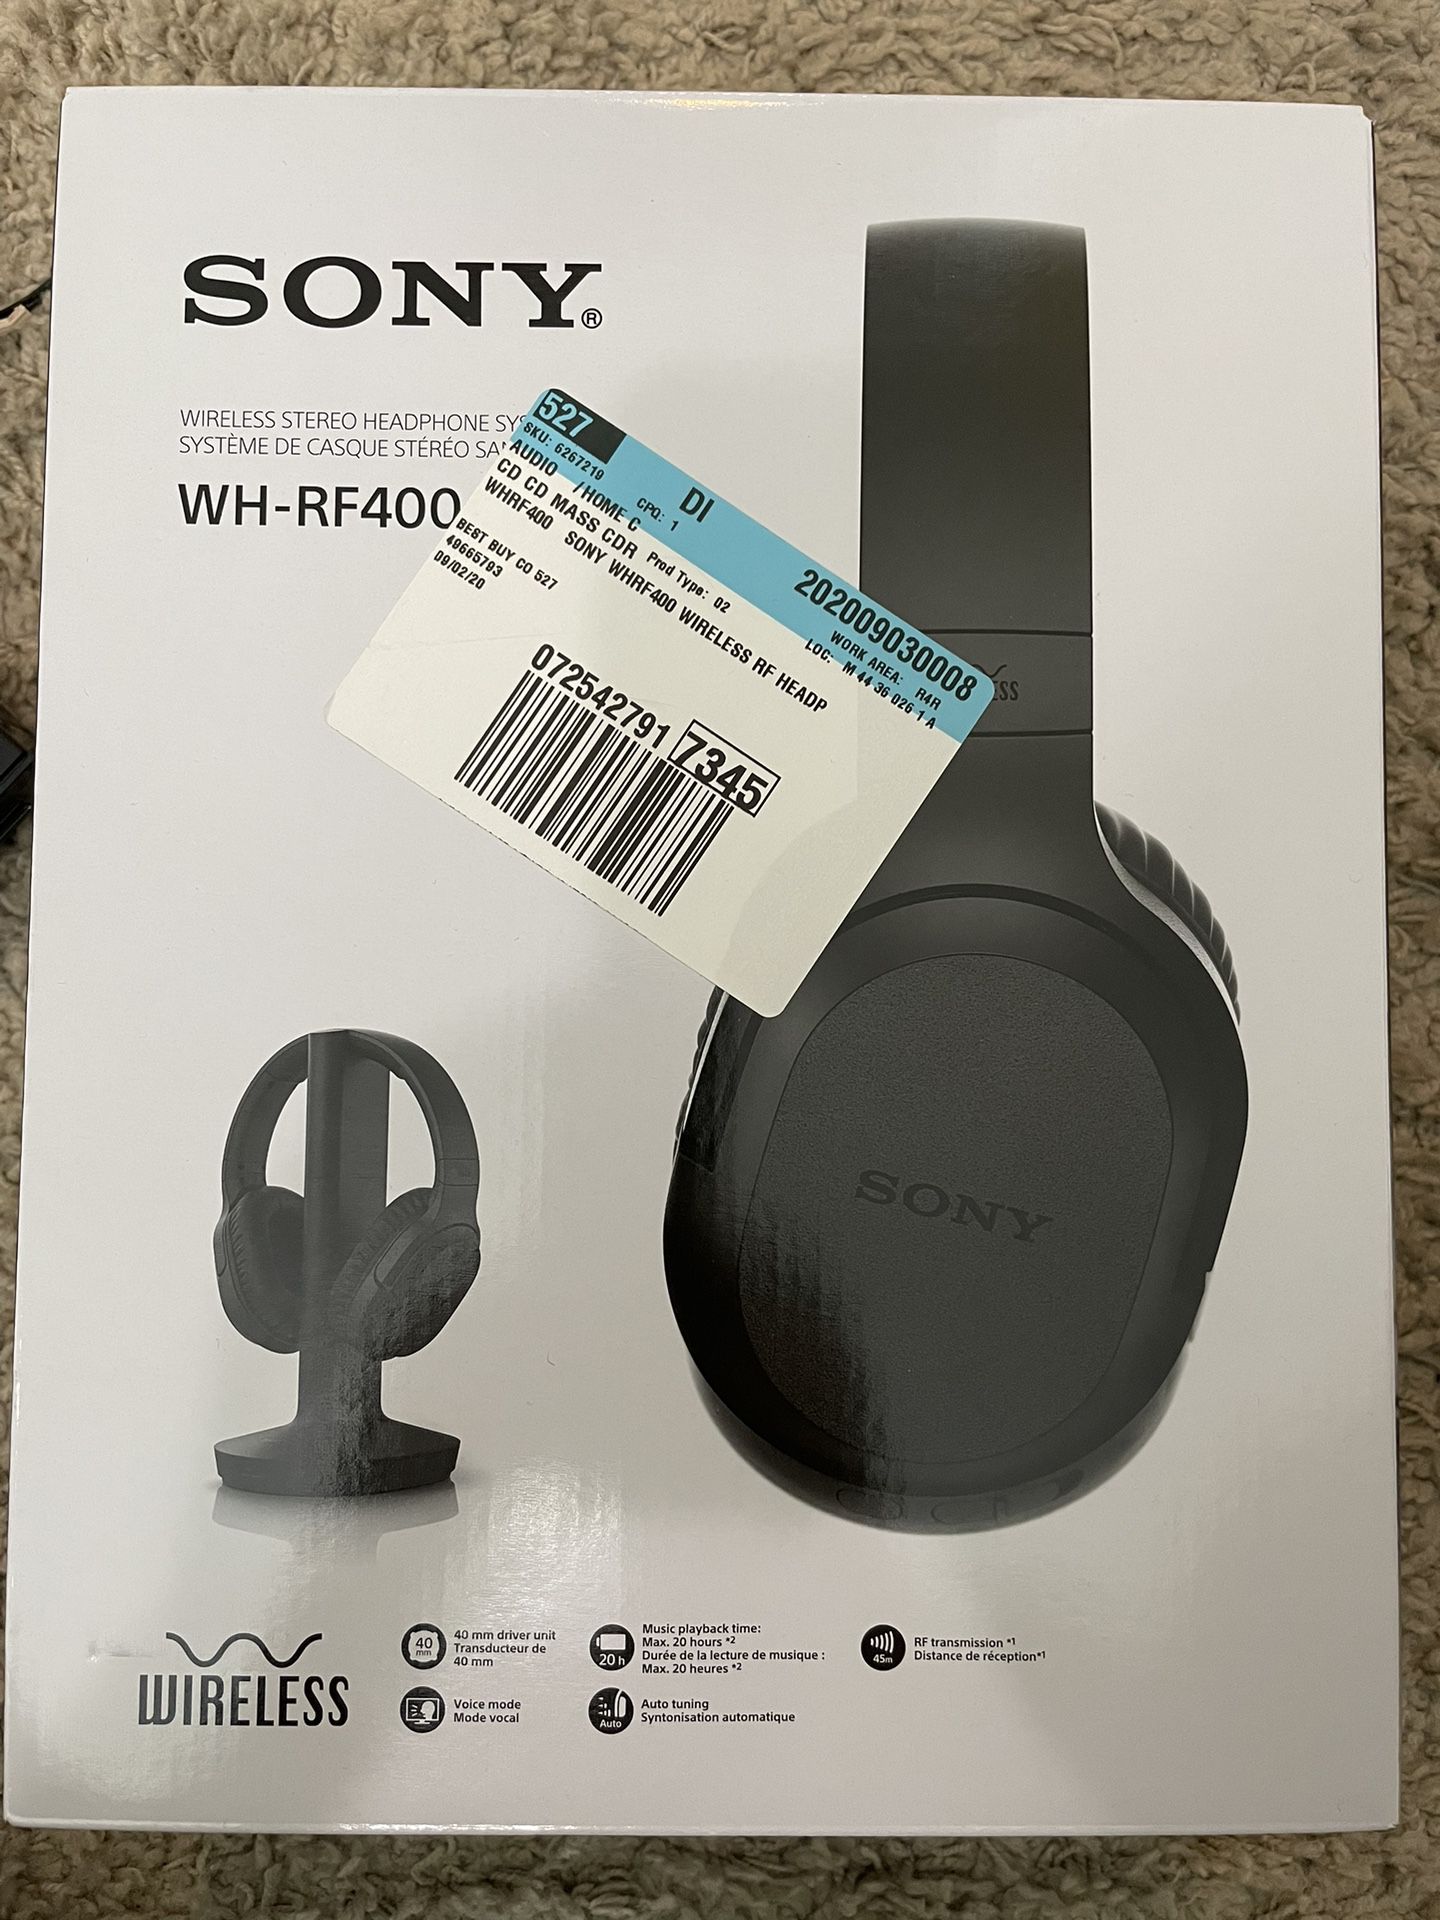 Sony Wireless Headphones WH-RF400